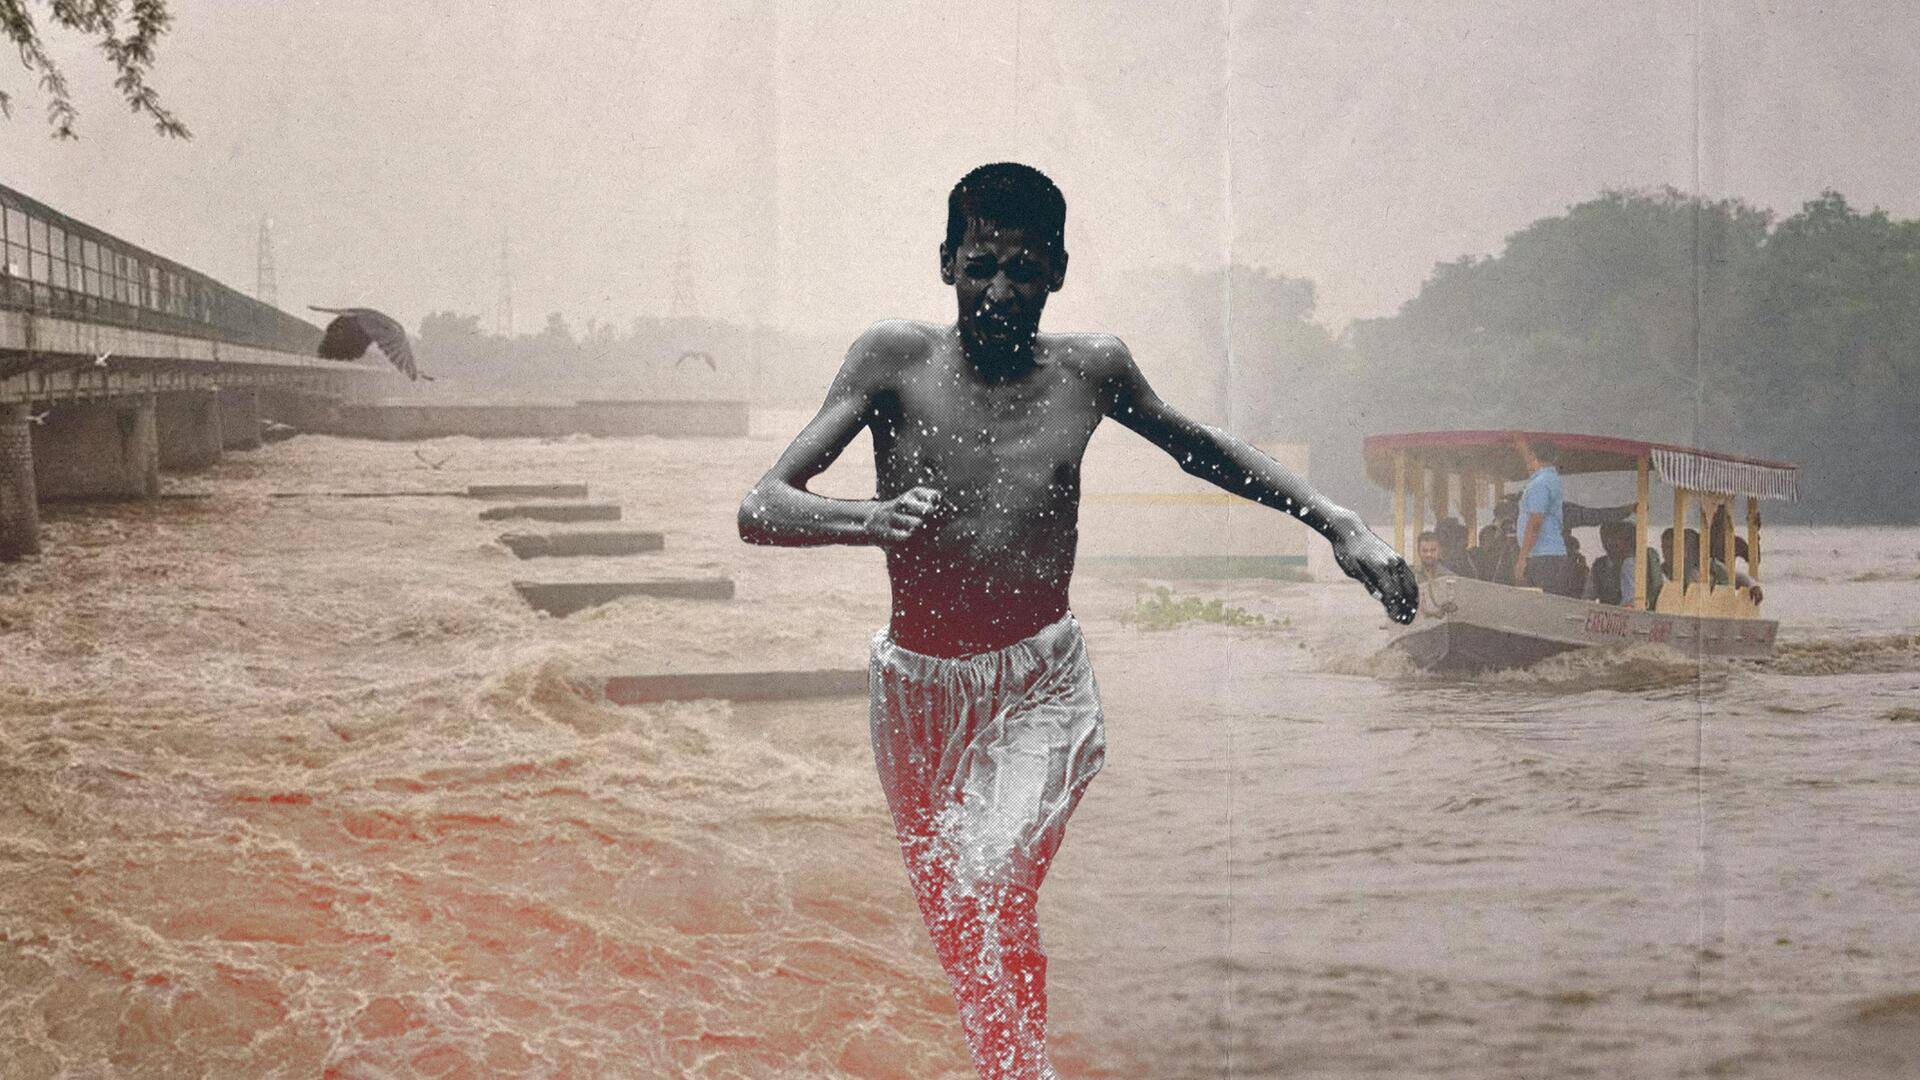 दिल्ली में बाढ़ का खतरा, लोगों को निकालने का काम शुरू 